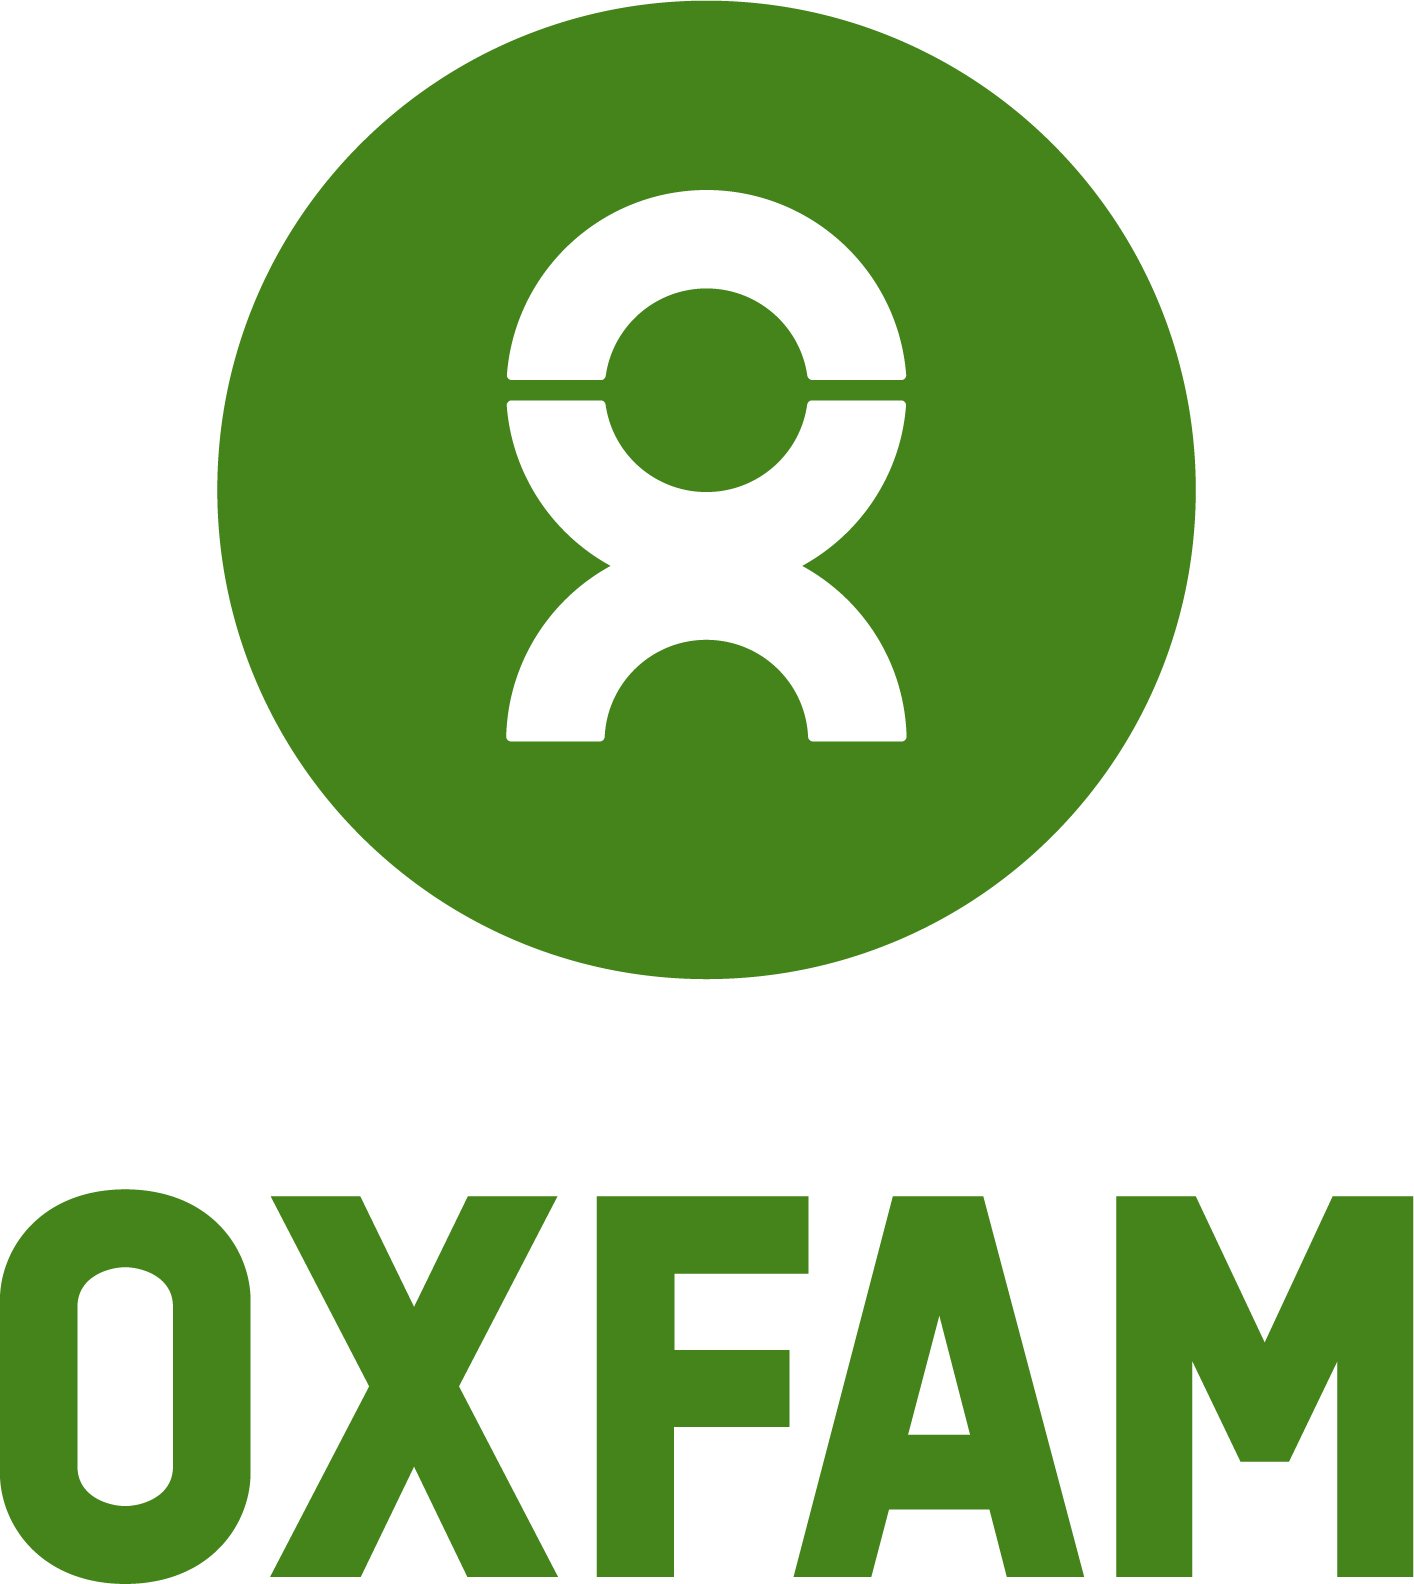 Oxfam logo vertical green.jpg